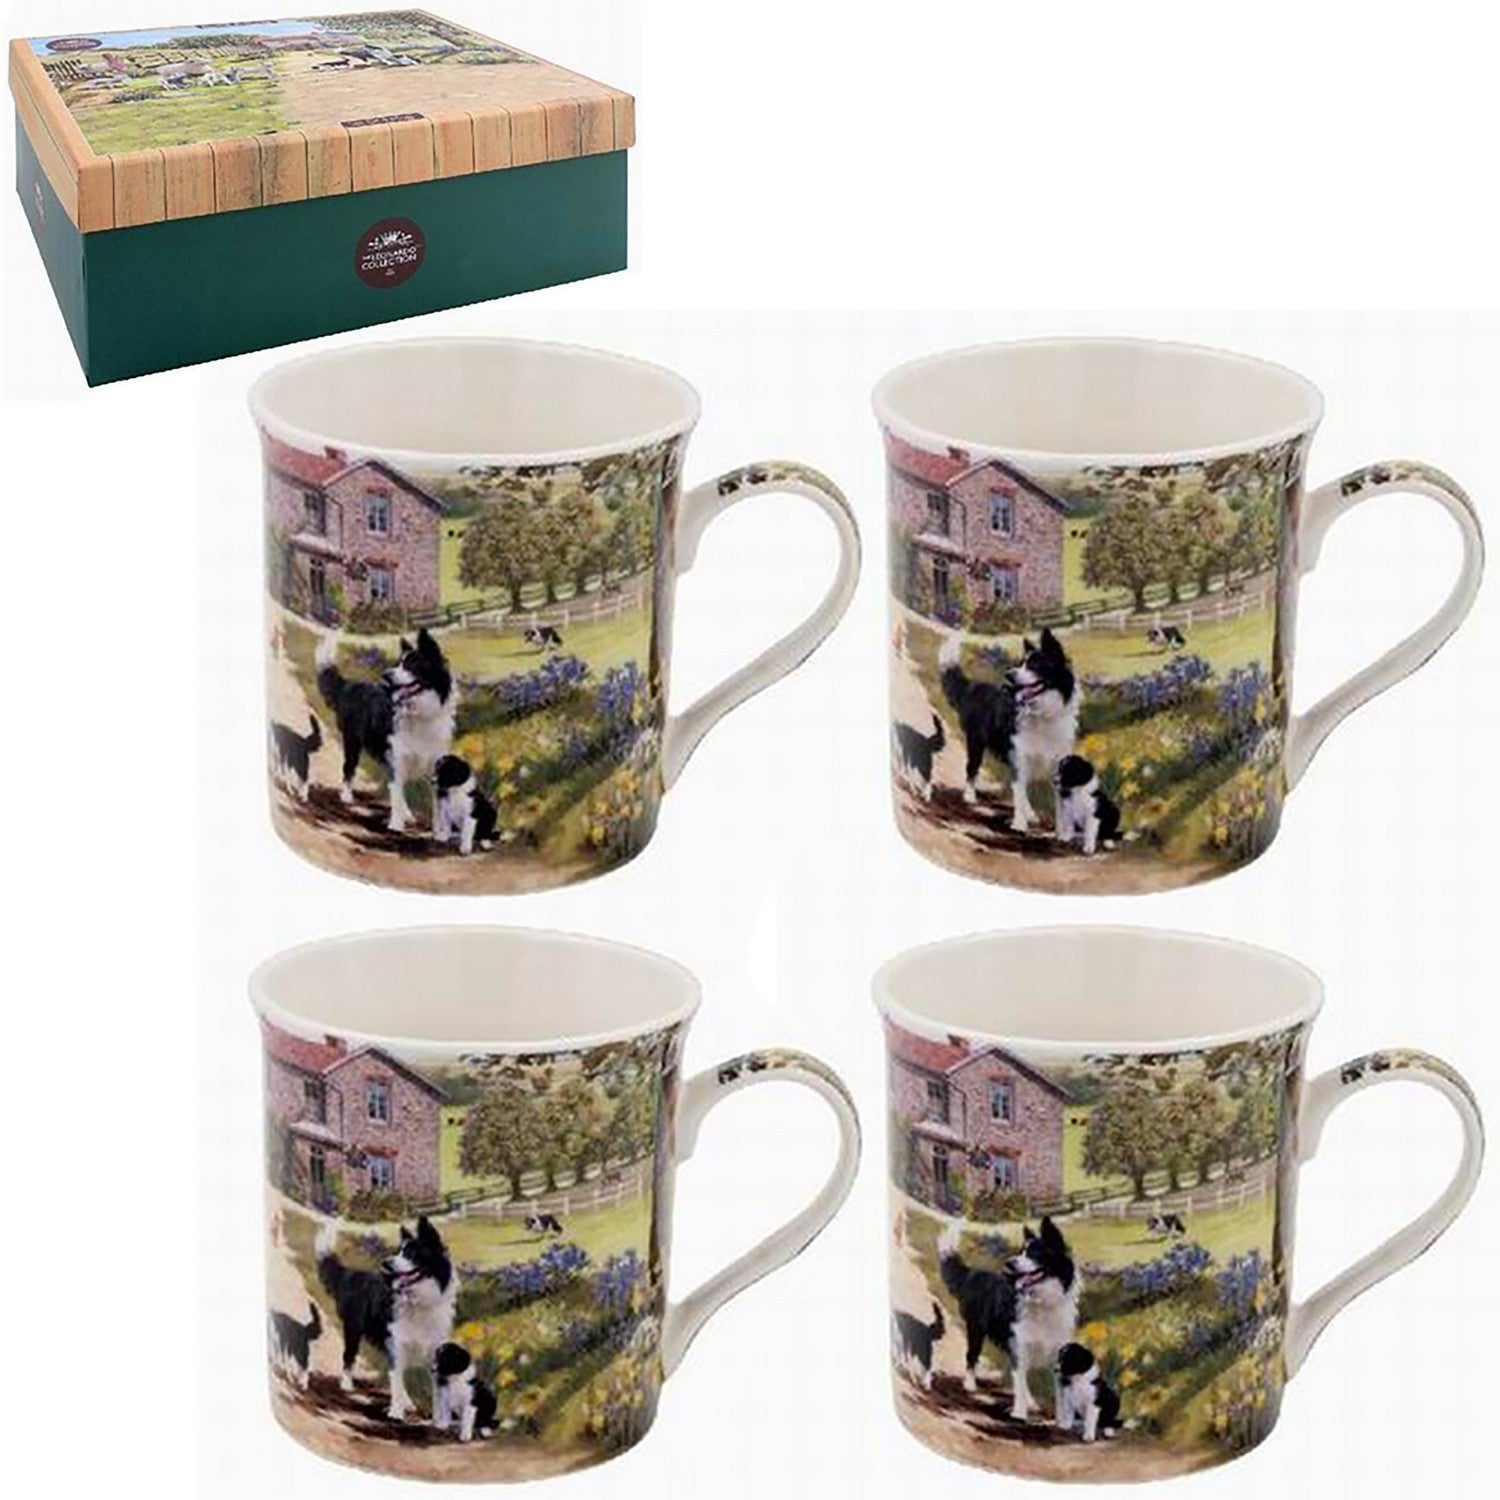 Set of 4 Collie & Sheep Design Mugs